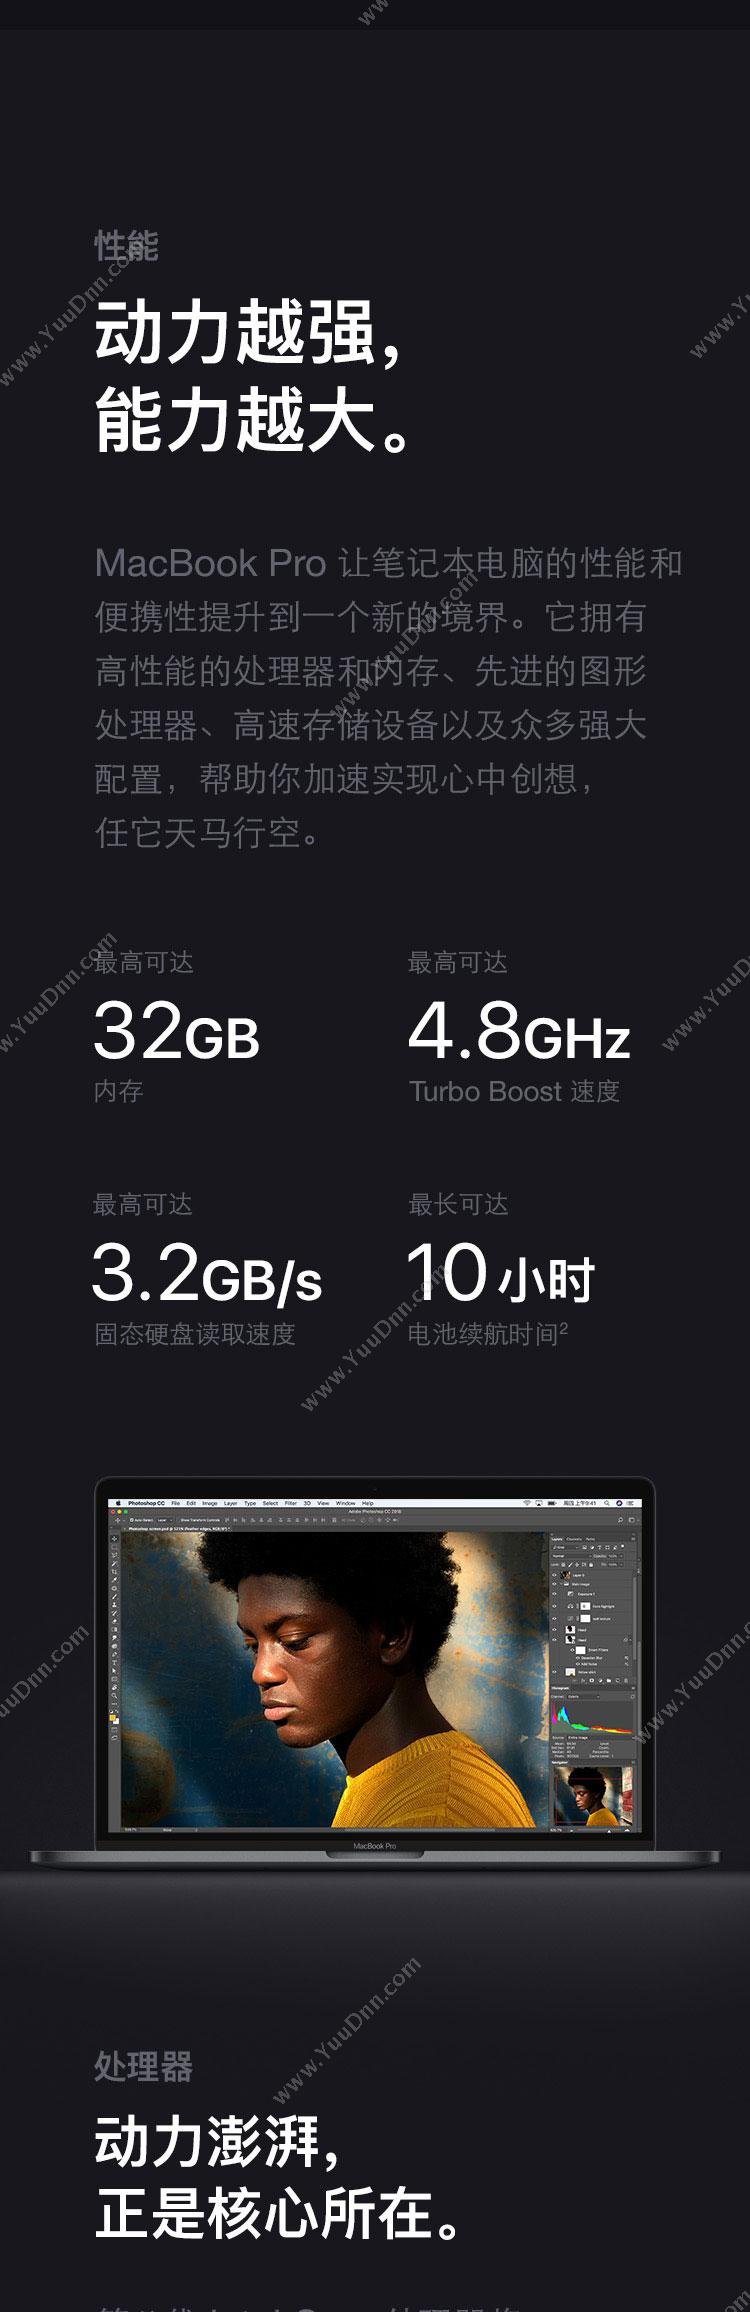 苹果 Apple MacBook ProMR972CH/A 15.4英寸 六核八代i7 16G 512G（银） 笔记本